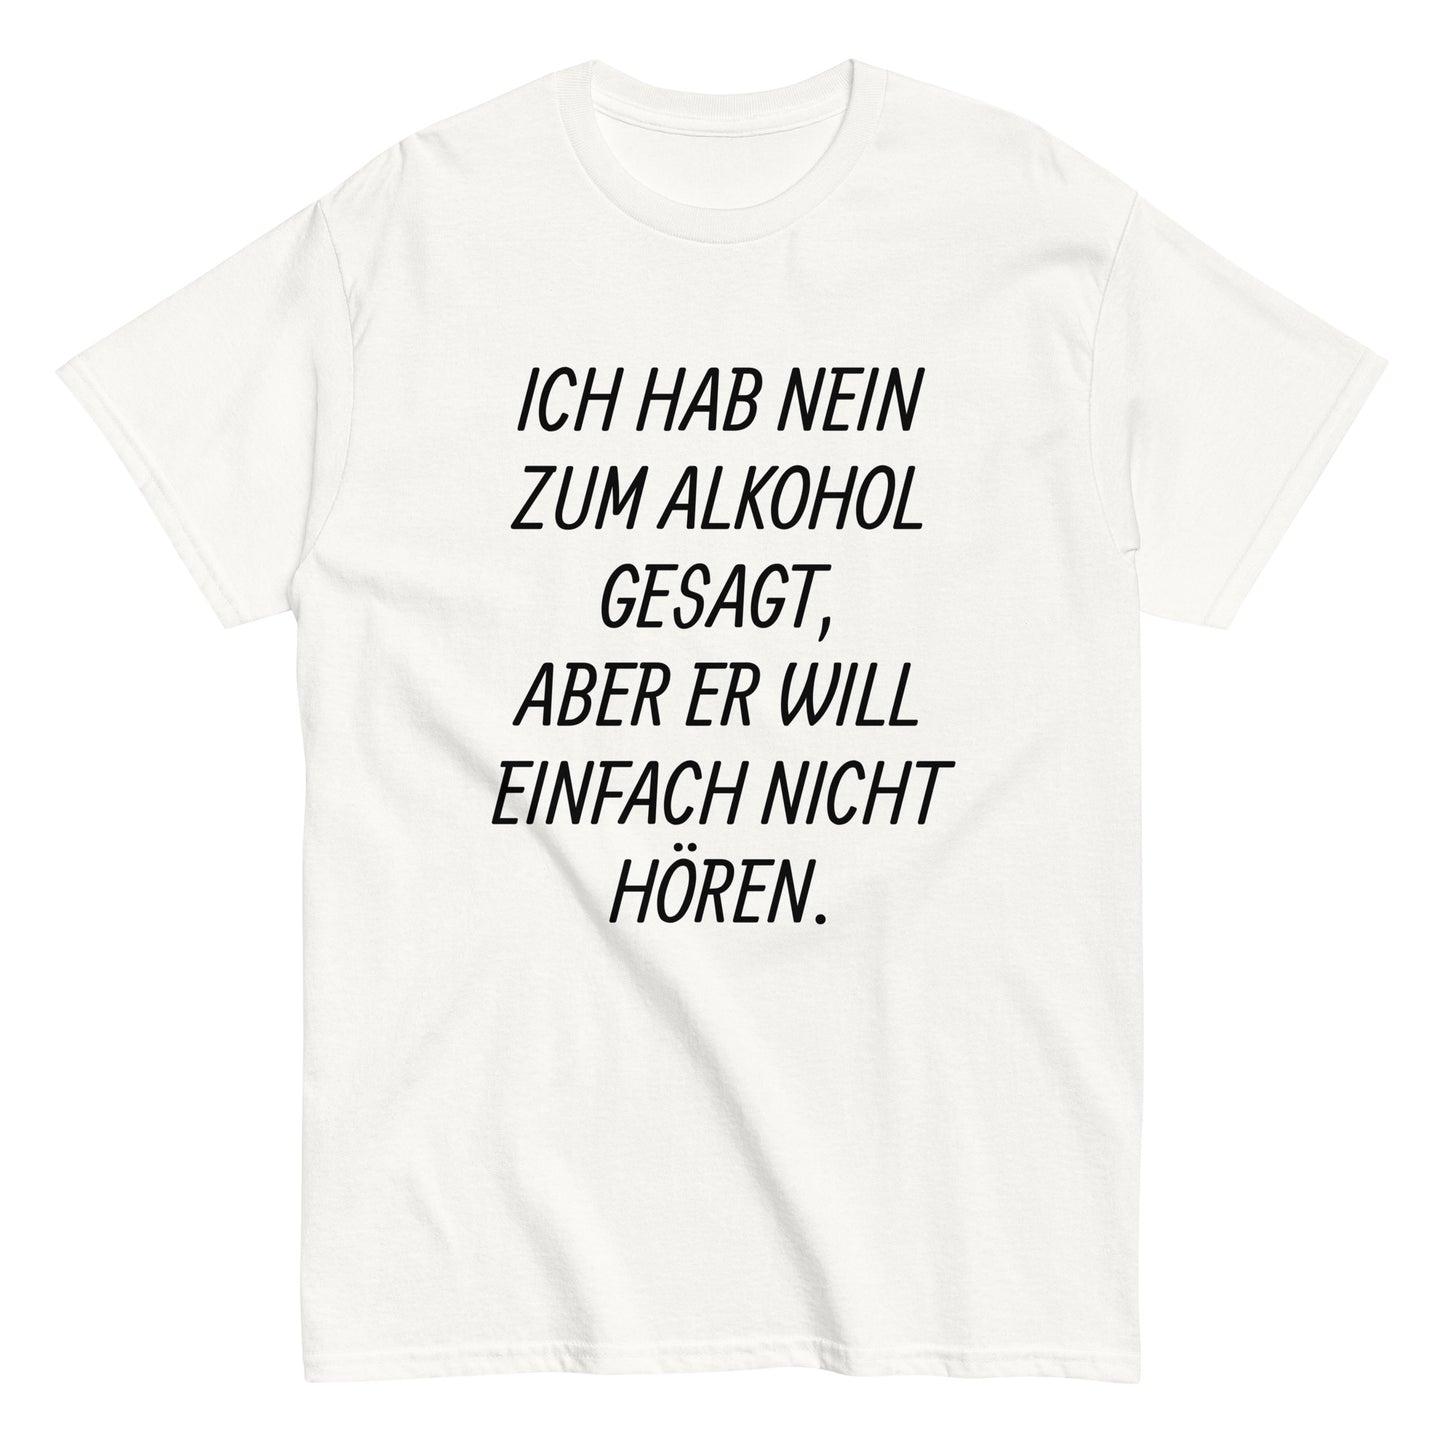 ICH HAB NEIN ZUM ALKOHOL GESAGT, ... T-Shirt